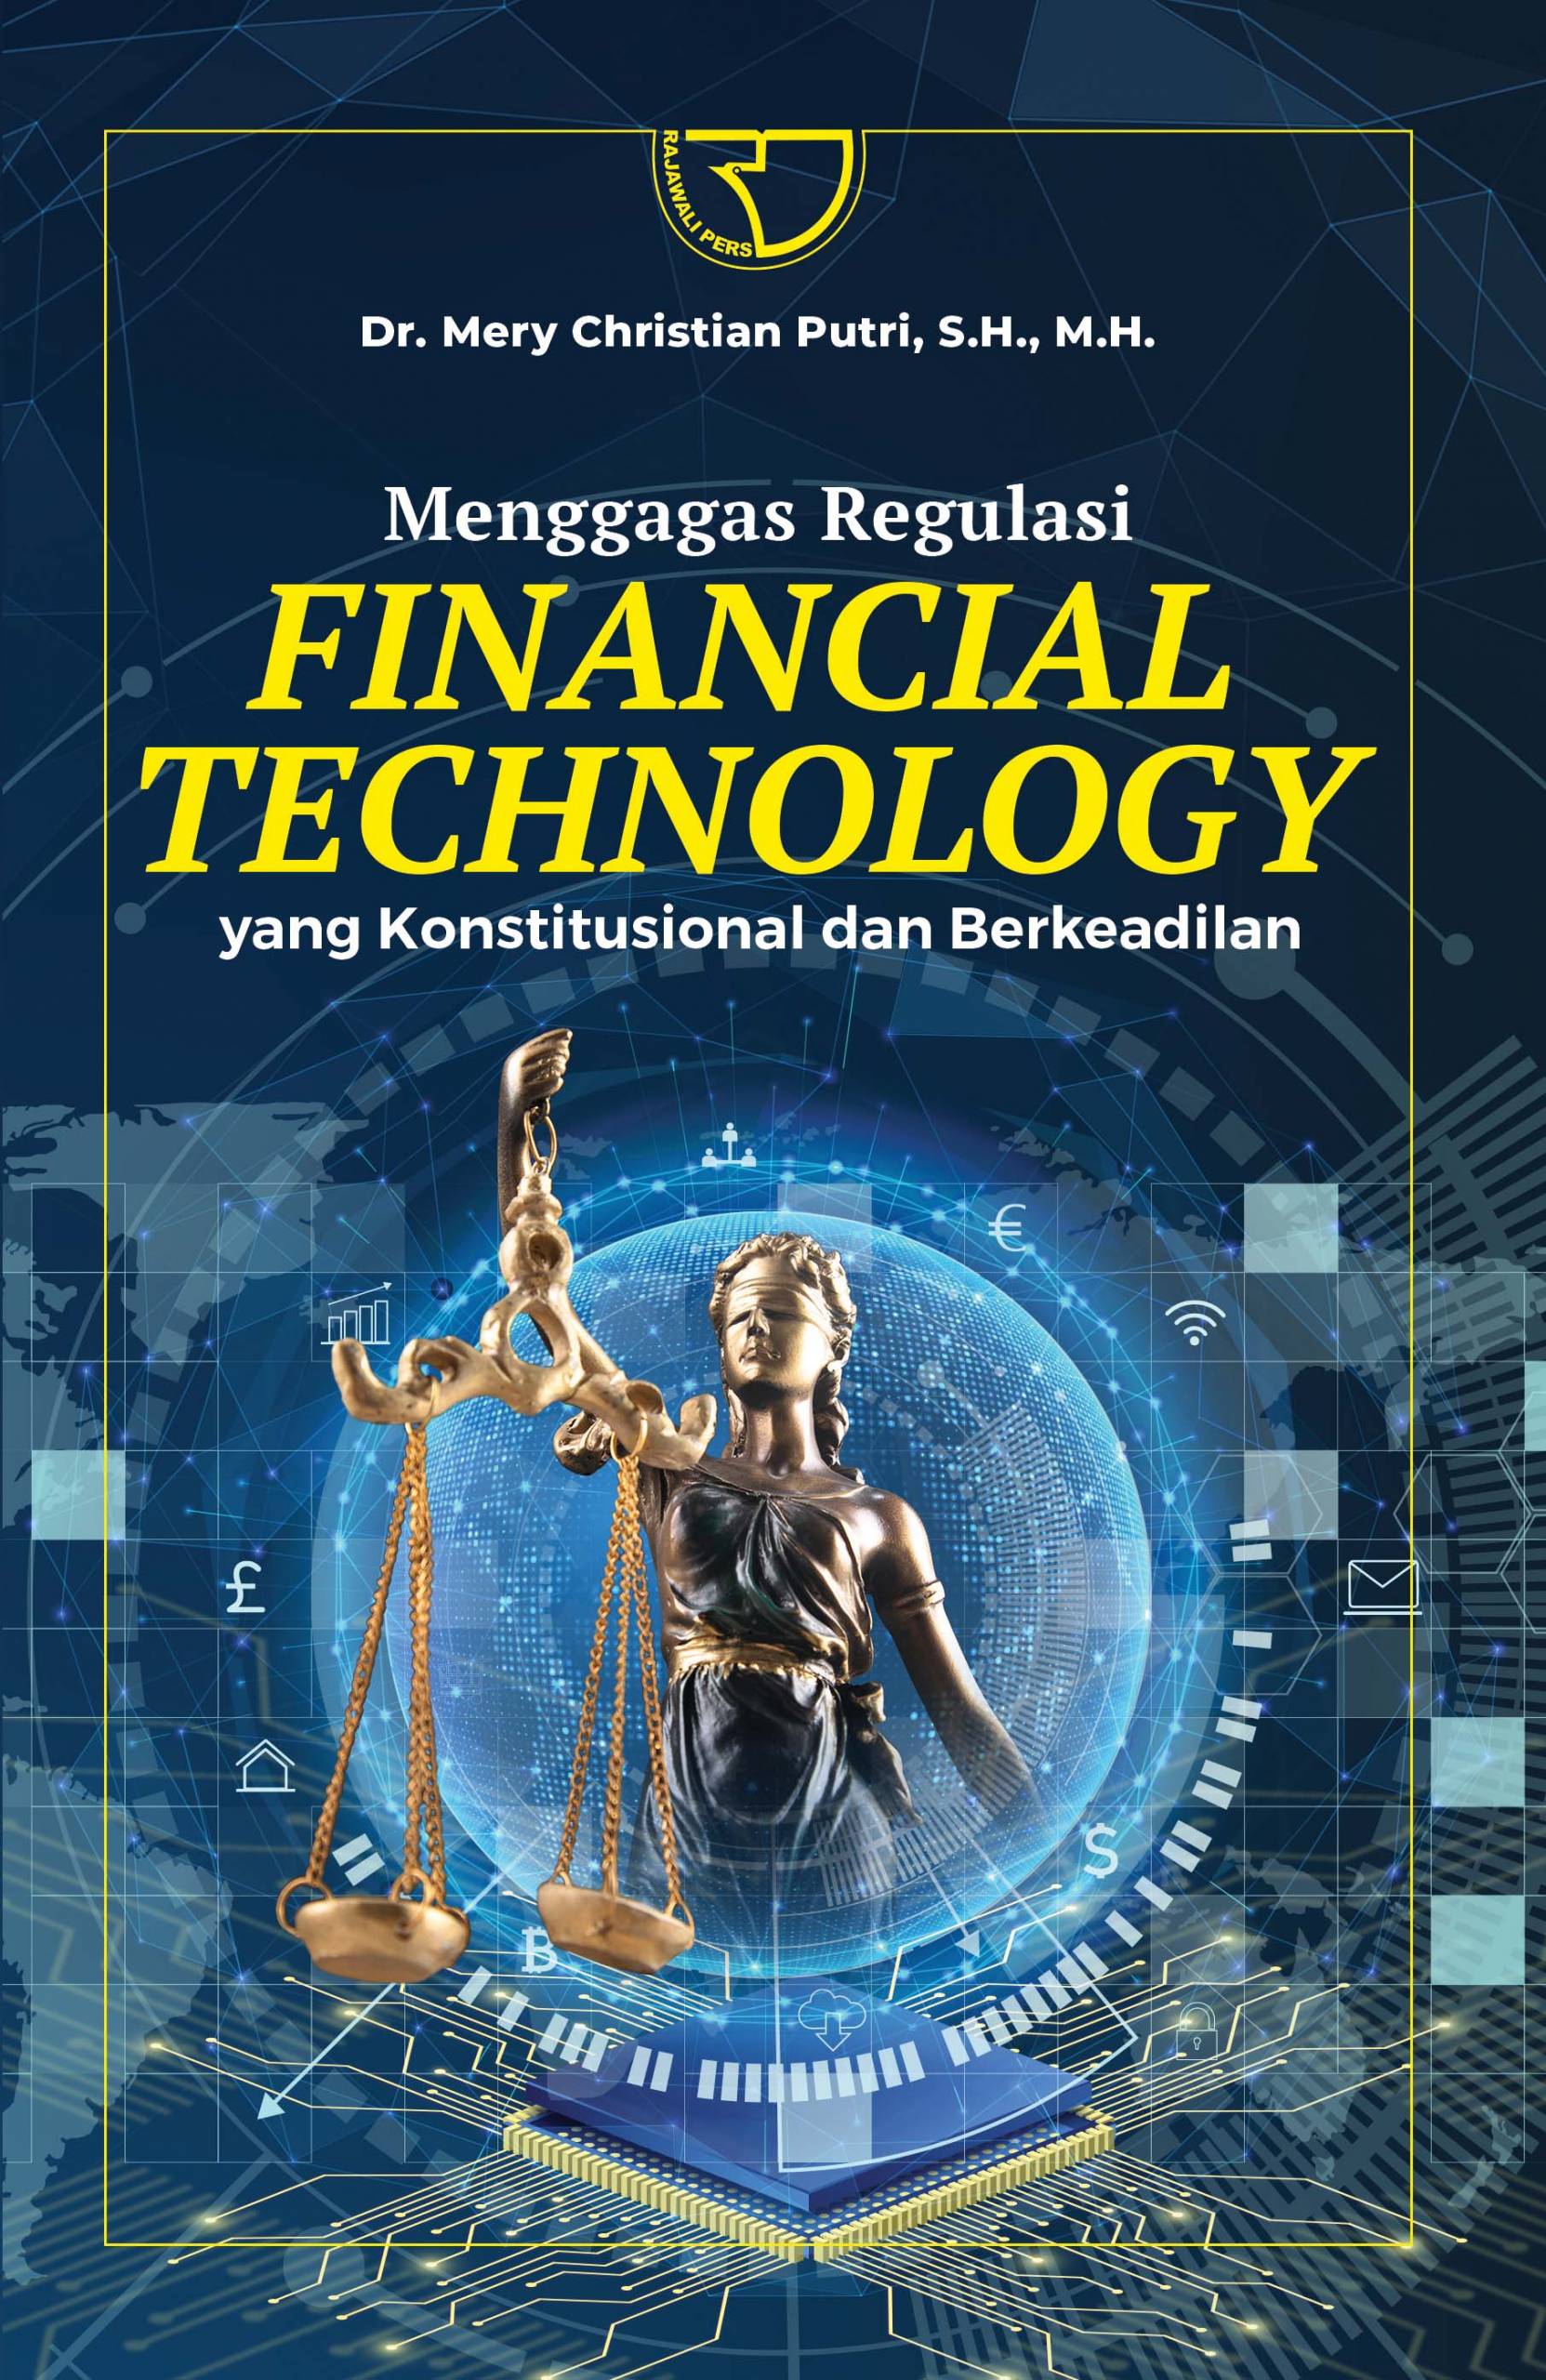 Menggagas regulasi financial technology yang konstitusional dan bereadilan